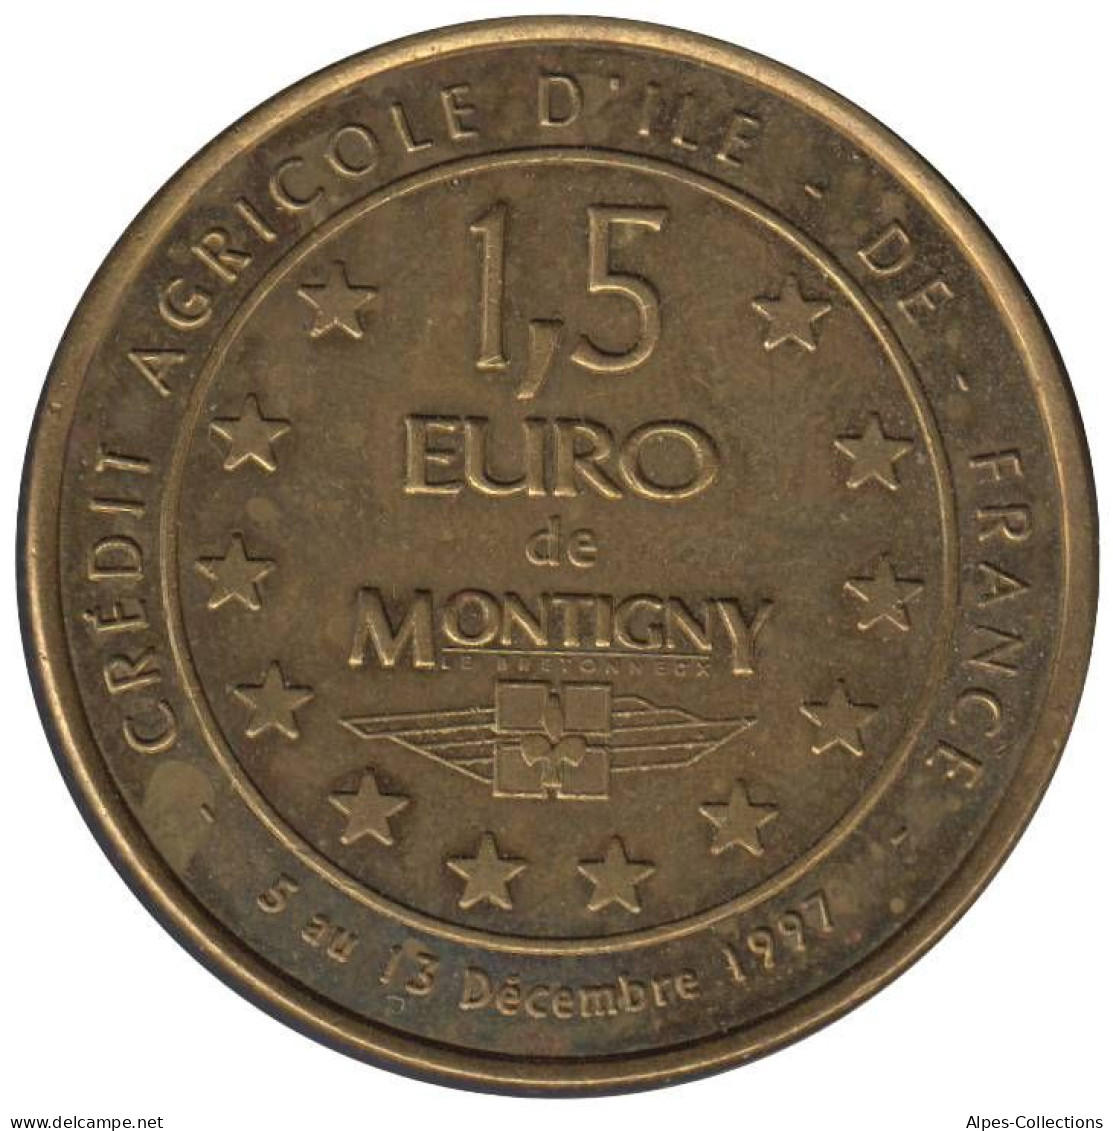 MONTIGNY - EU0015.1 - 1,5 EURO DES VILLES - Réf: NR - 1997 - Euro Delle Città